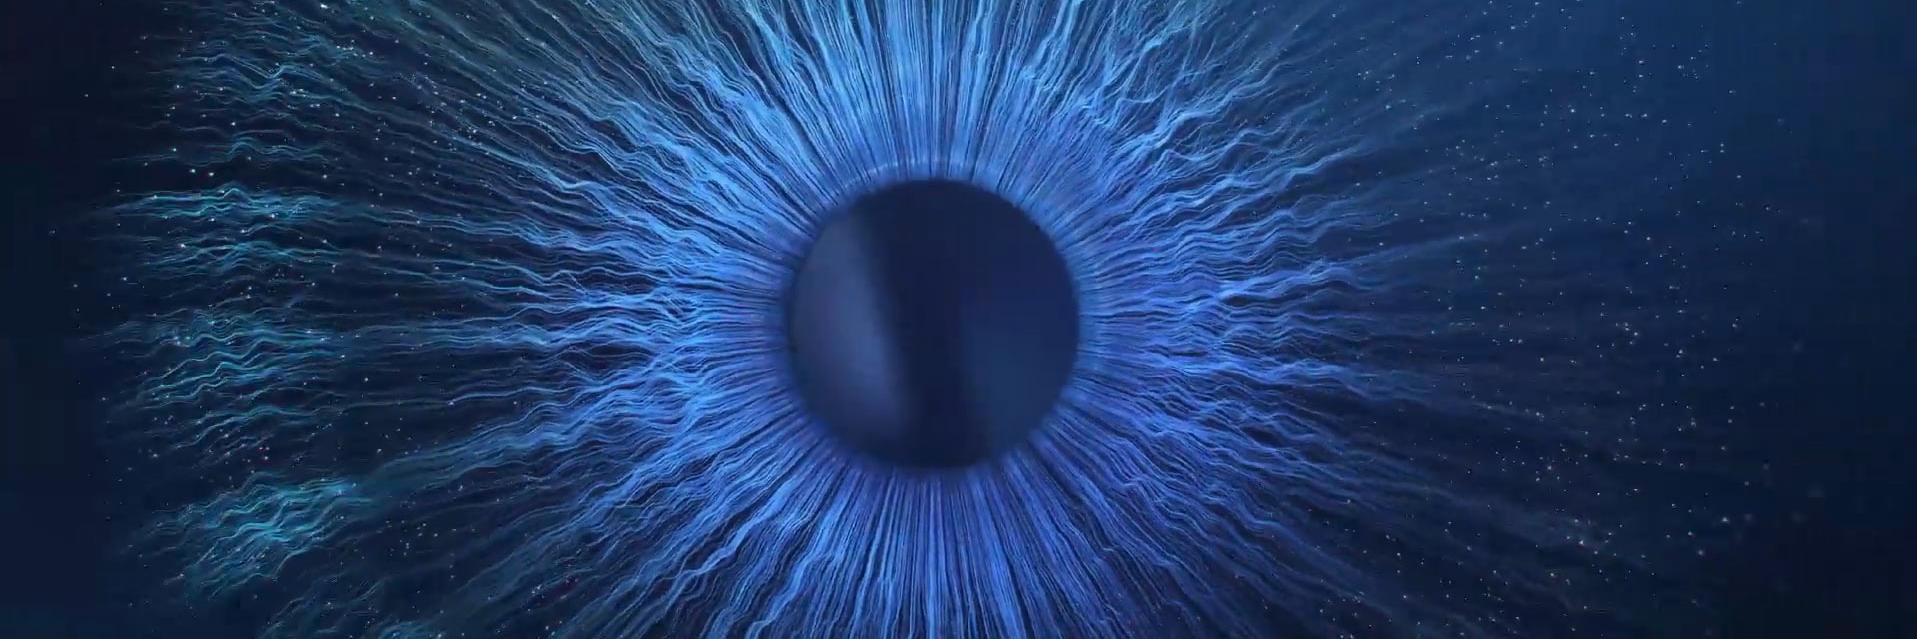 Meje domišljije so nam v izziv – posnetek modrega očesnega zrkla v temi od blizu.